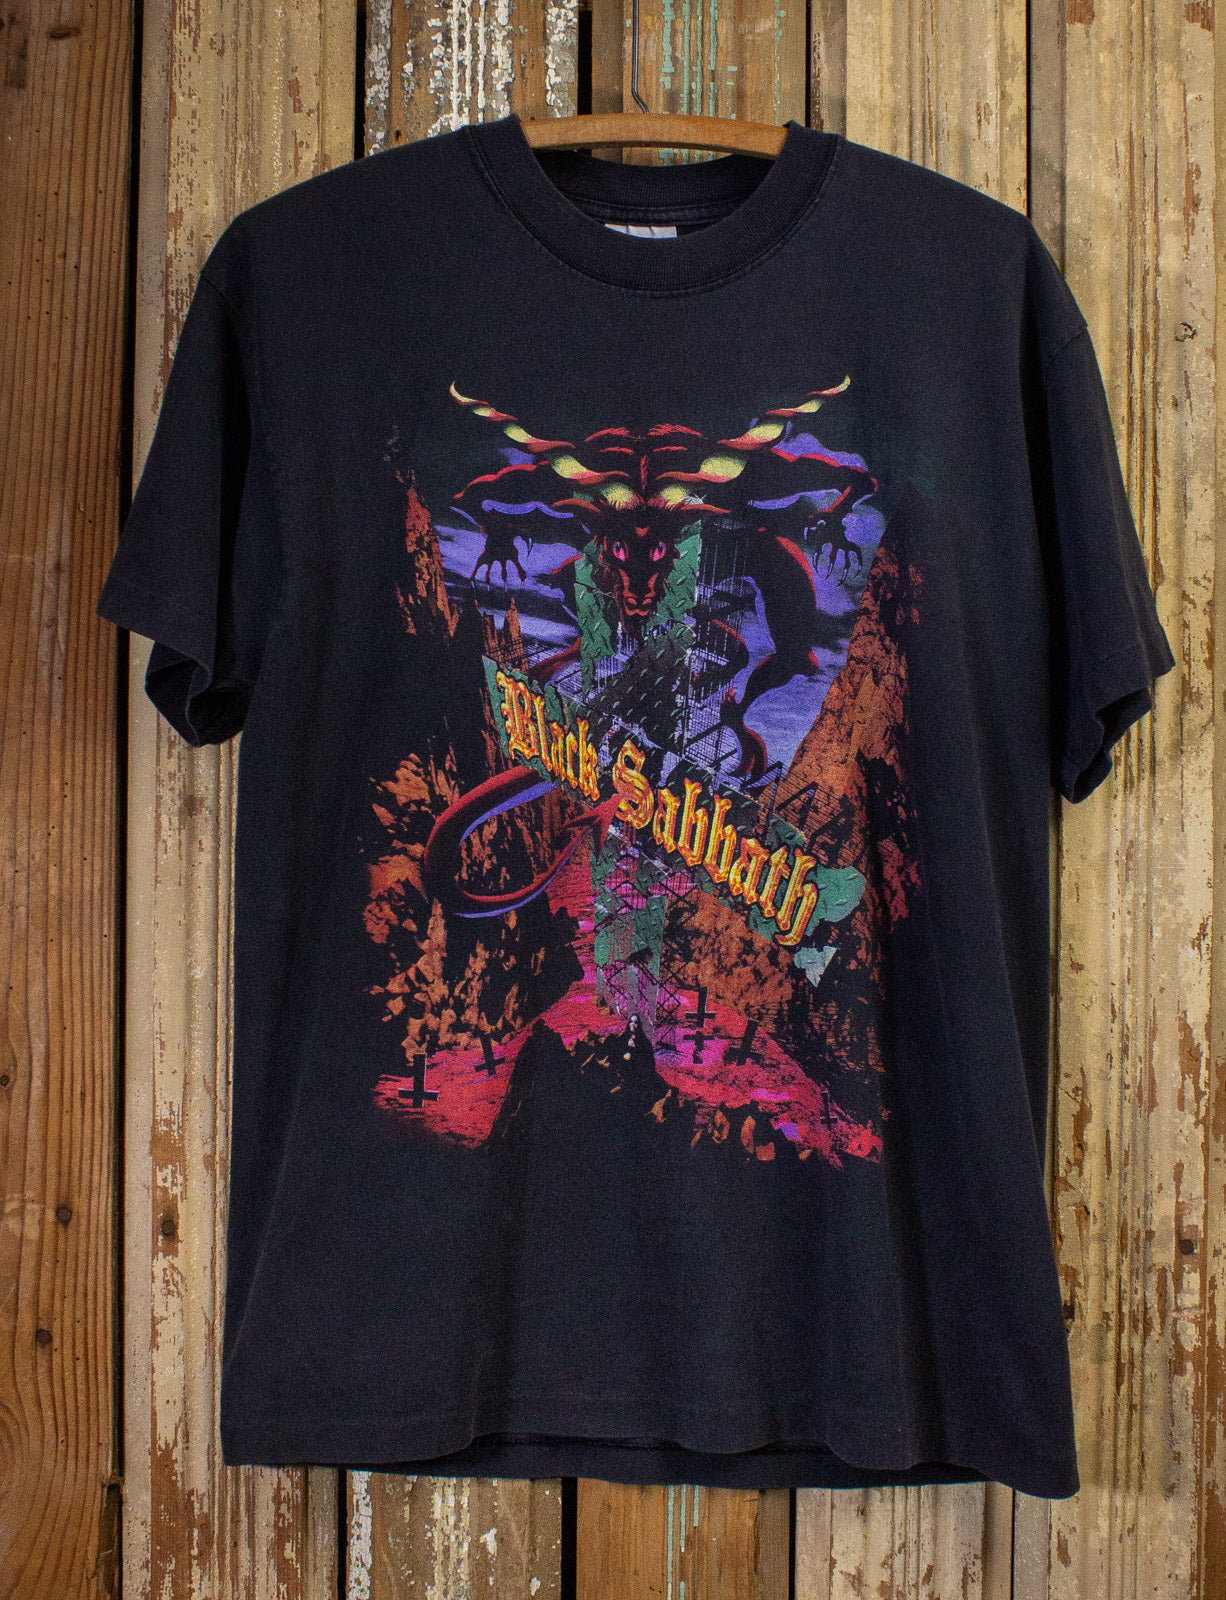 Vintage Black Sabbath Goat Tour Concert T Shirt 90s Black Large